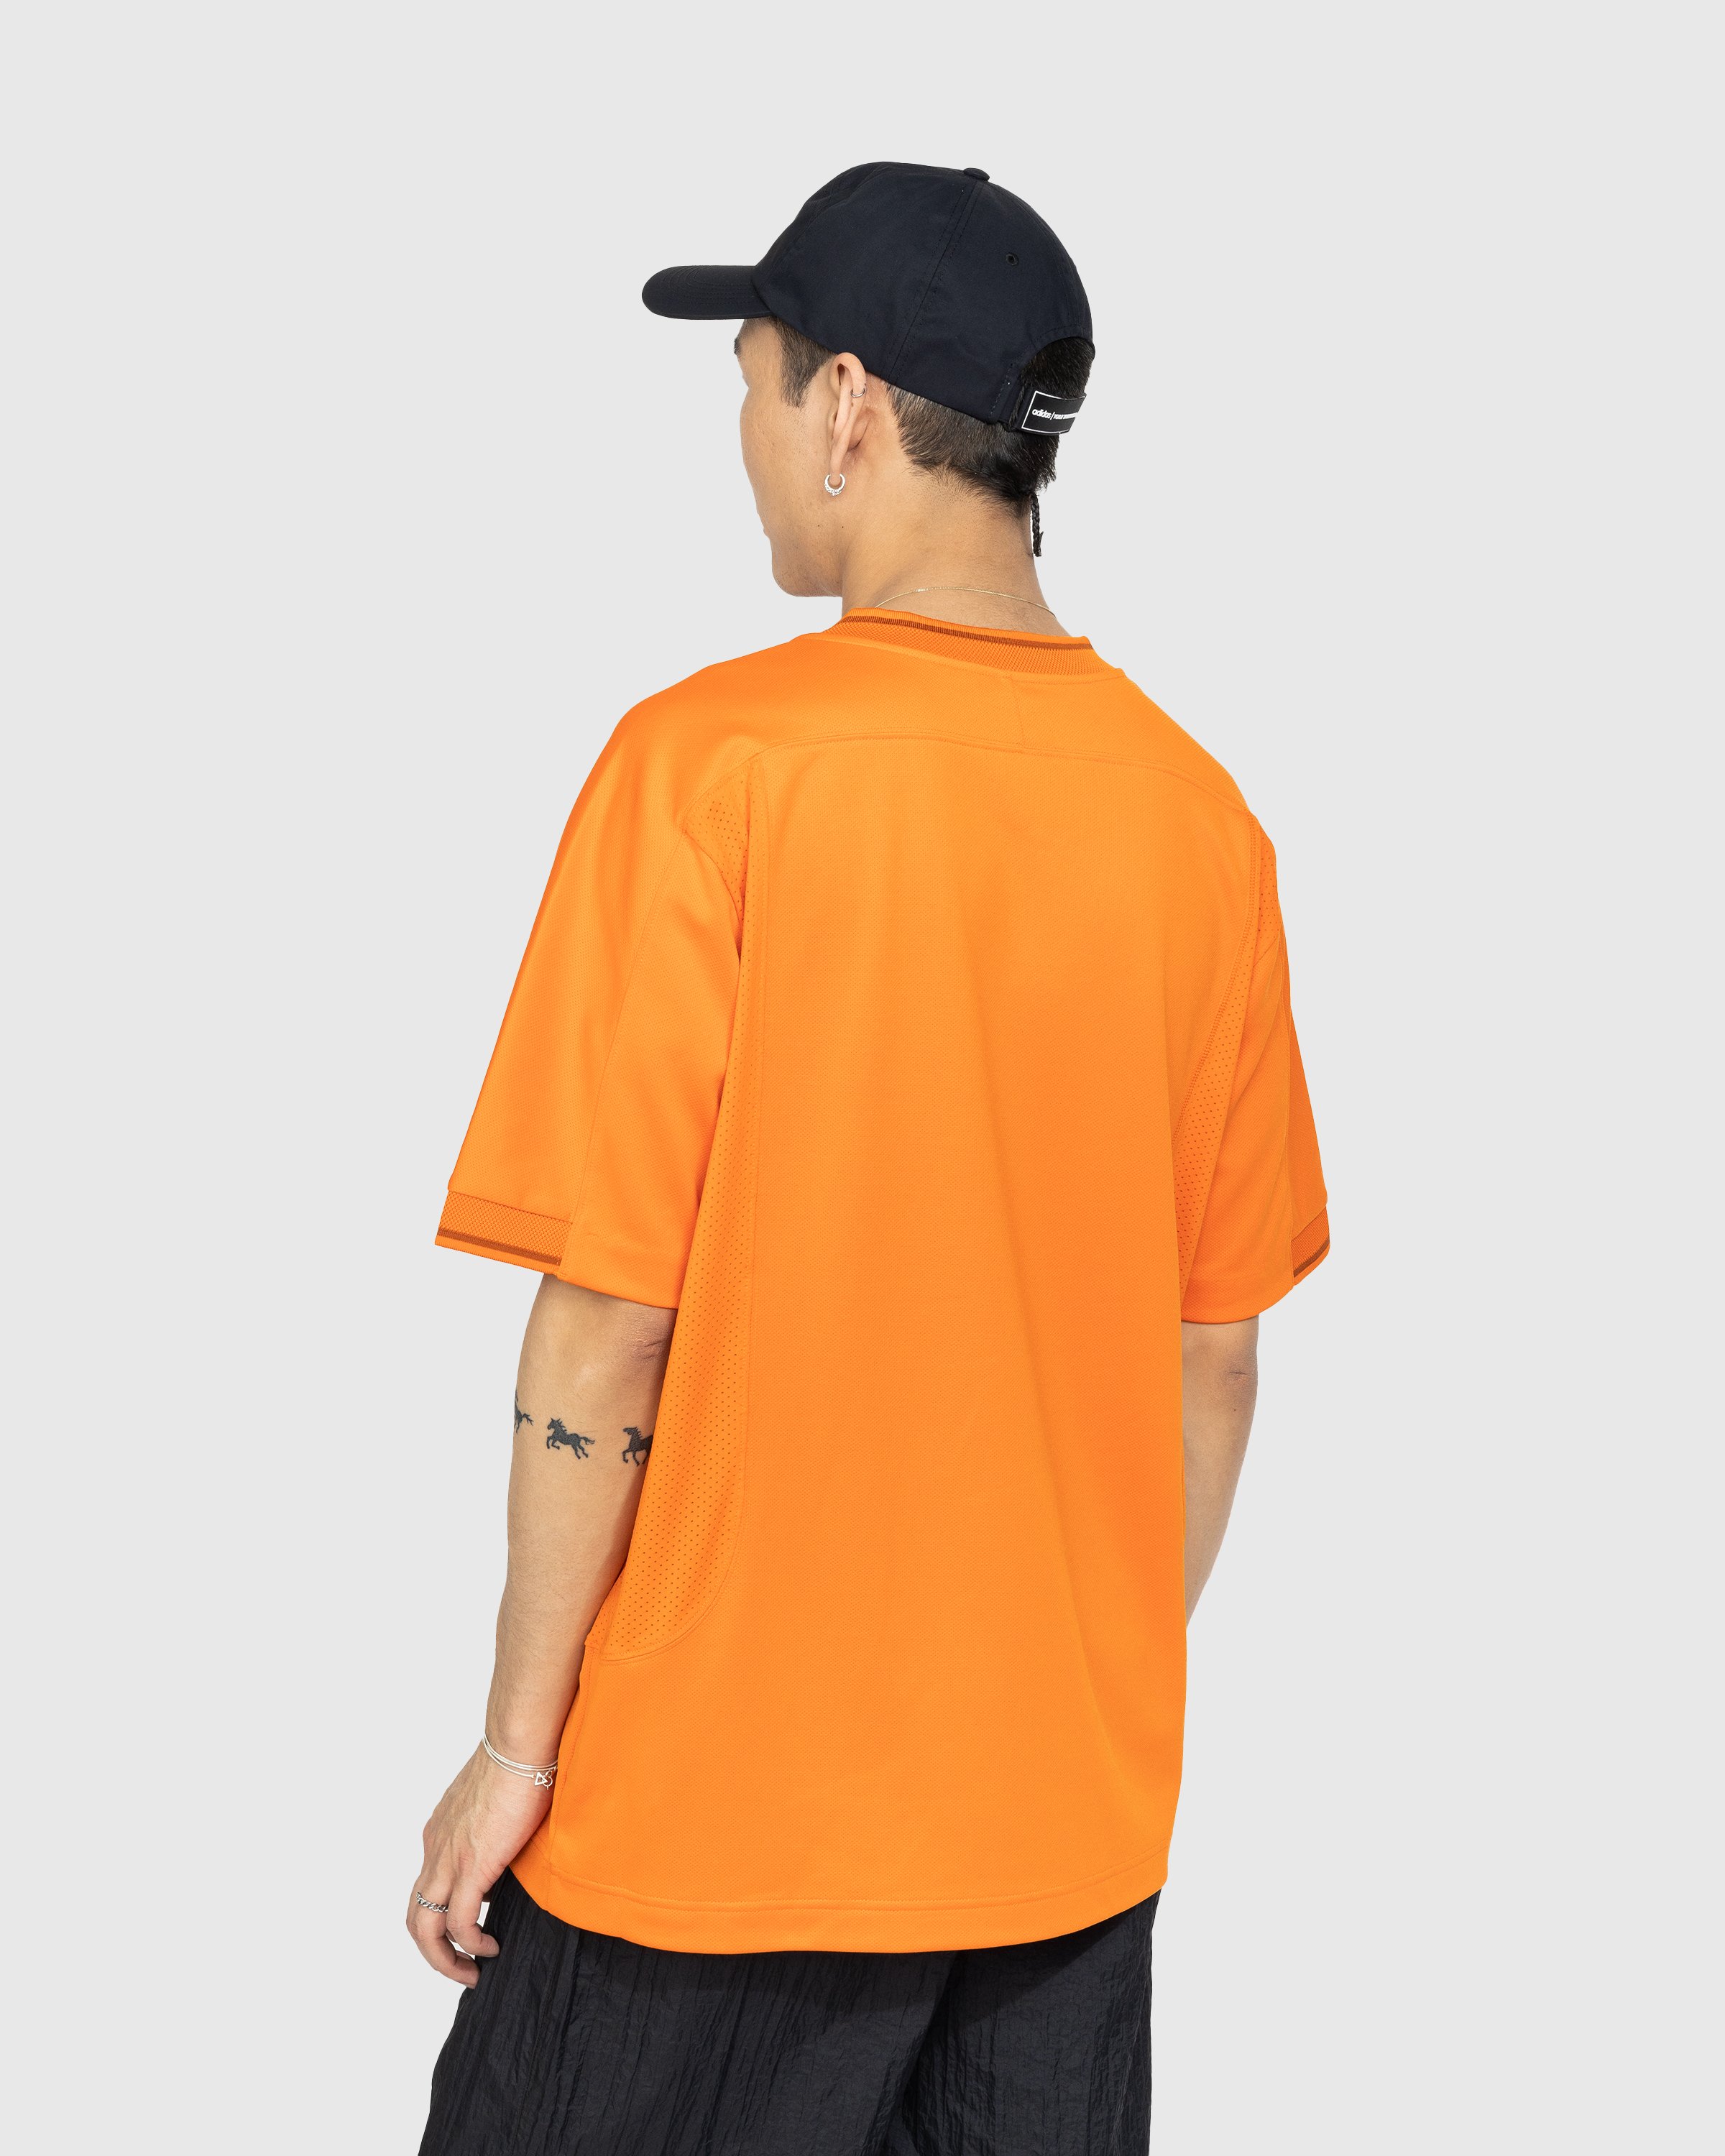 Y-3 - Logo T-Shirt - Clothing - Orange - Image 3